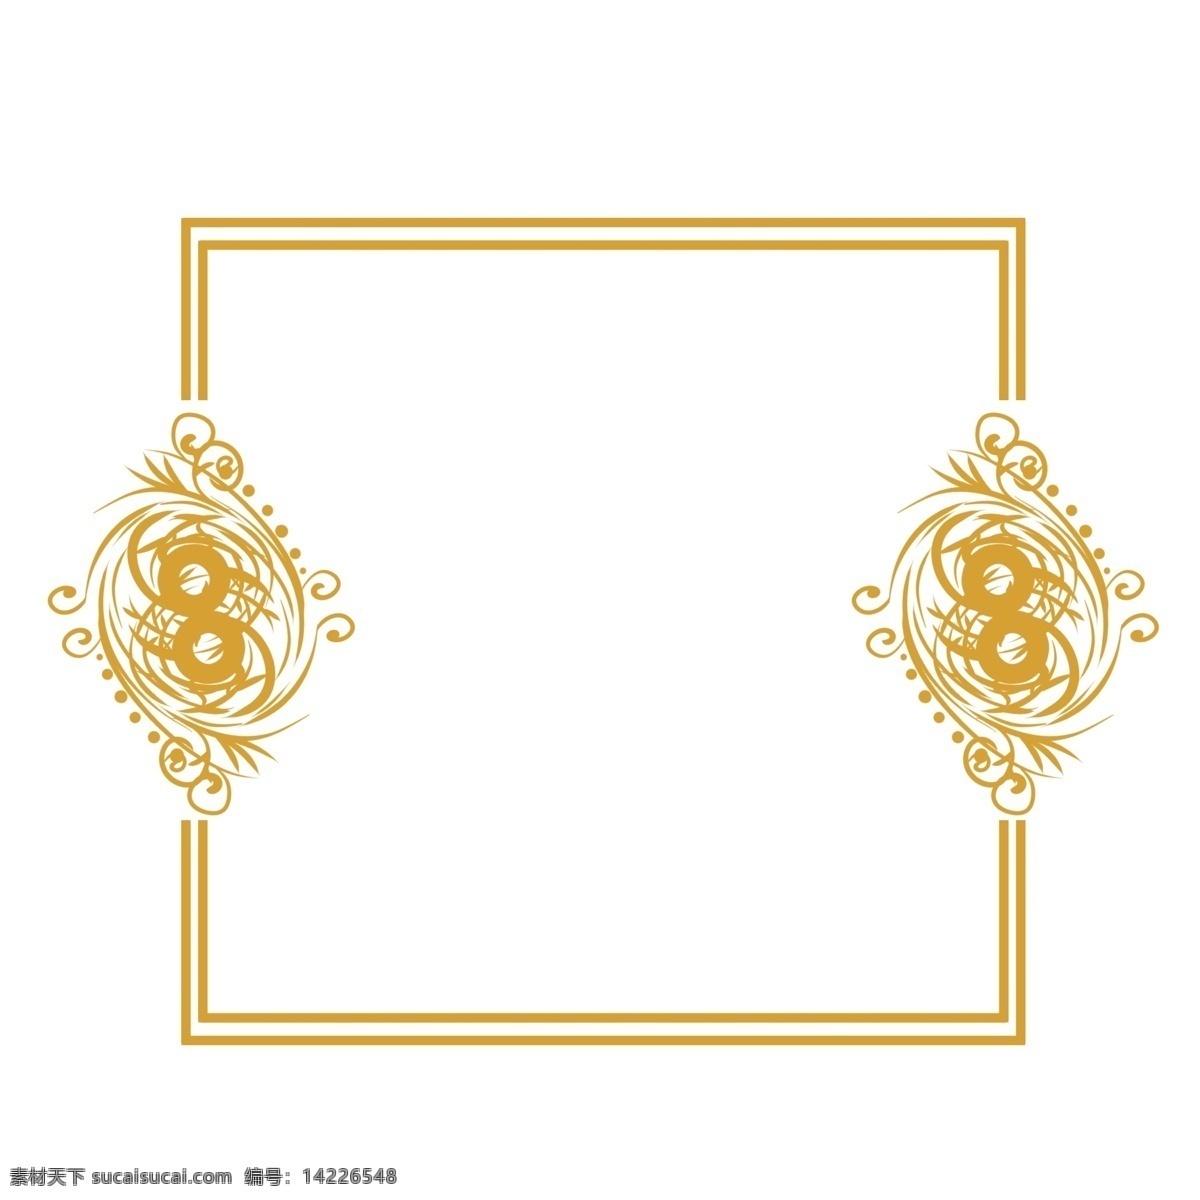 欧式 金色 相框 插画 金色欧式相框 欧式花纹 植物花纹 花纹边框 欧式金色相框 边框相框